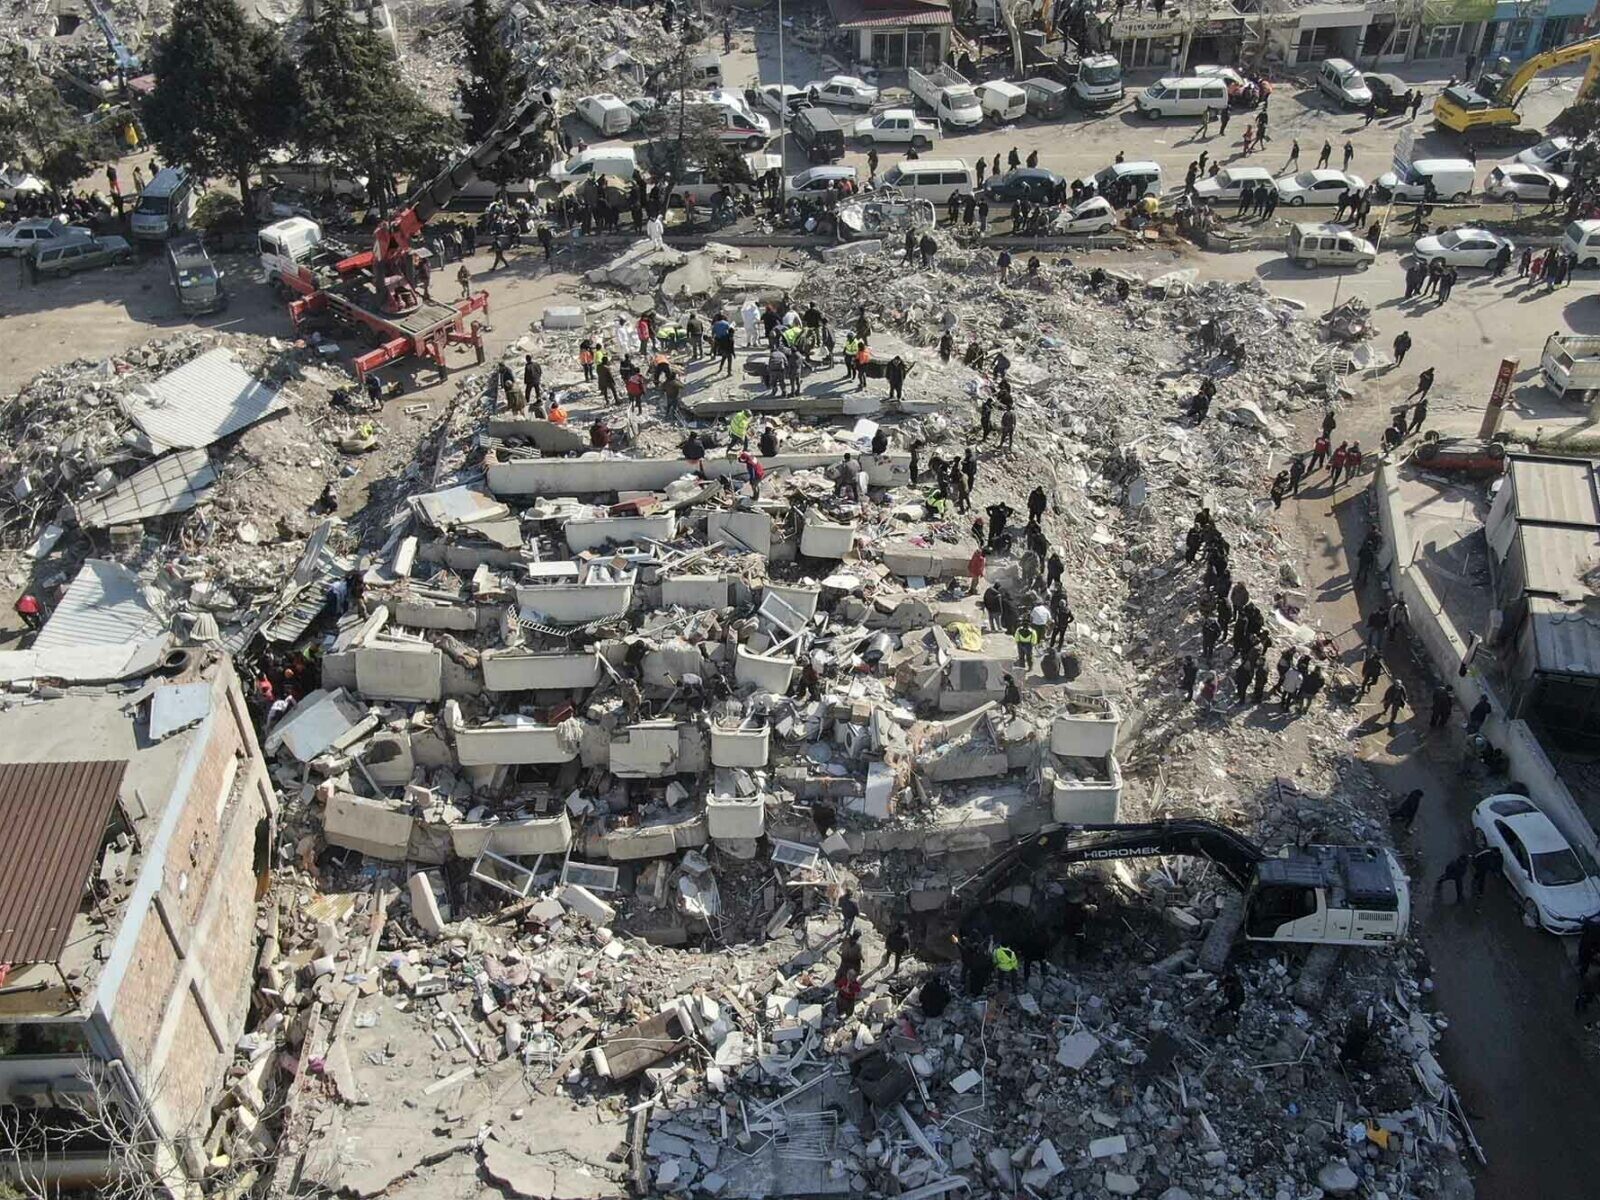 More information about "Σεισμός στην Τουρκία: Πέντε (5) εντυπωσιακές φωτογραφίες αποτυπώνουν τα σεισμο-τεκτονικά αίτια που συνετέλεσαν στη μεγάλη καταστροφή"